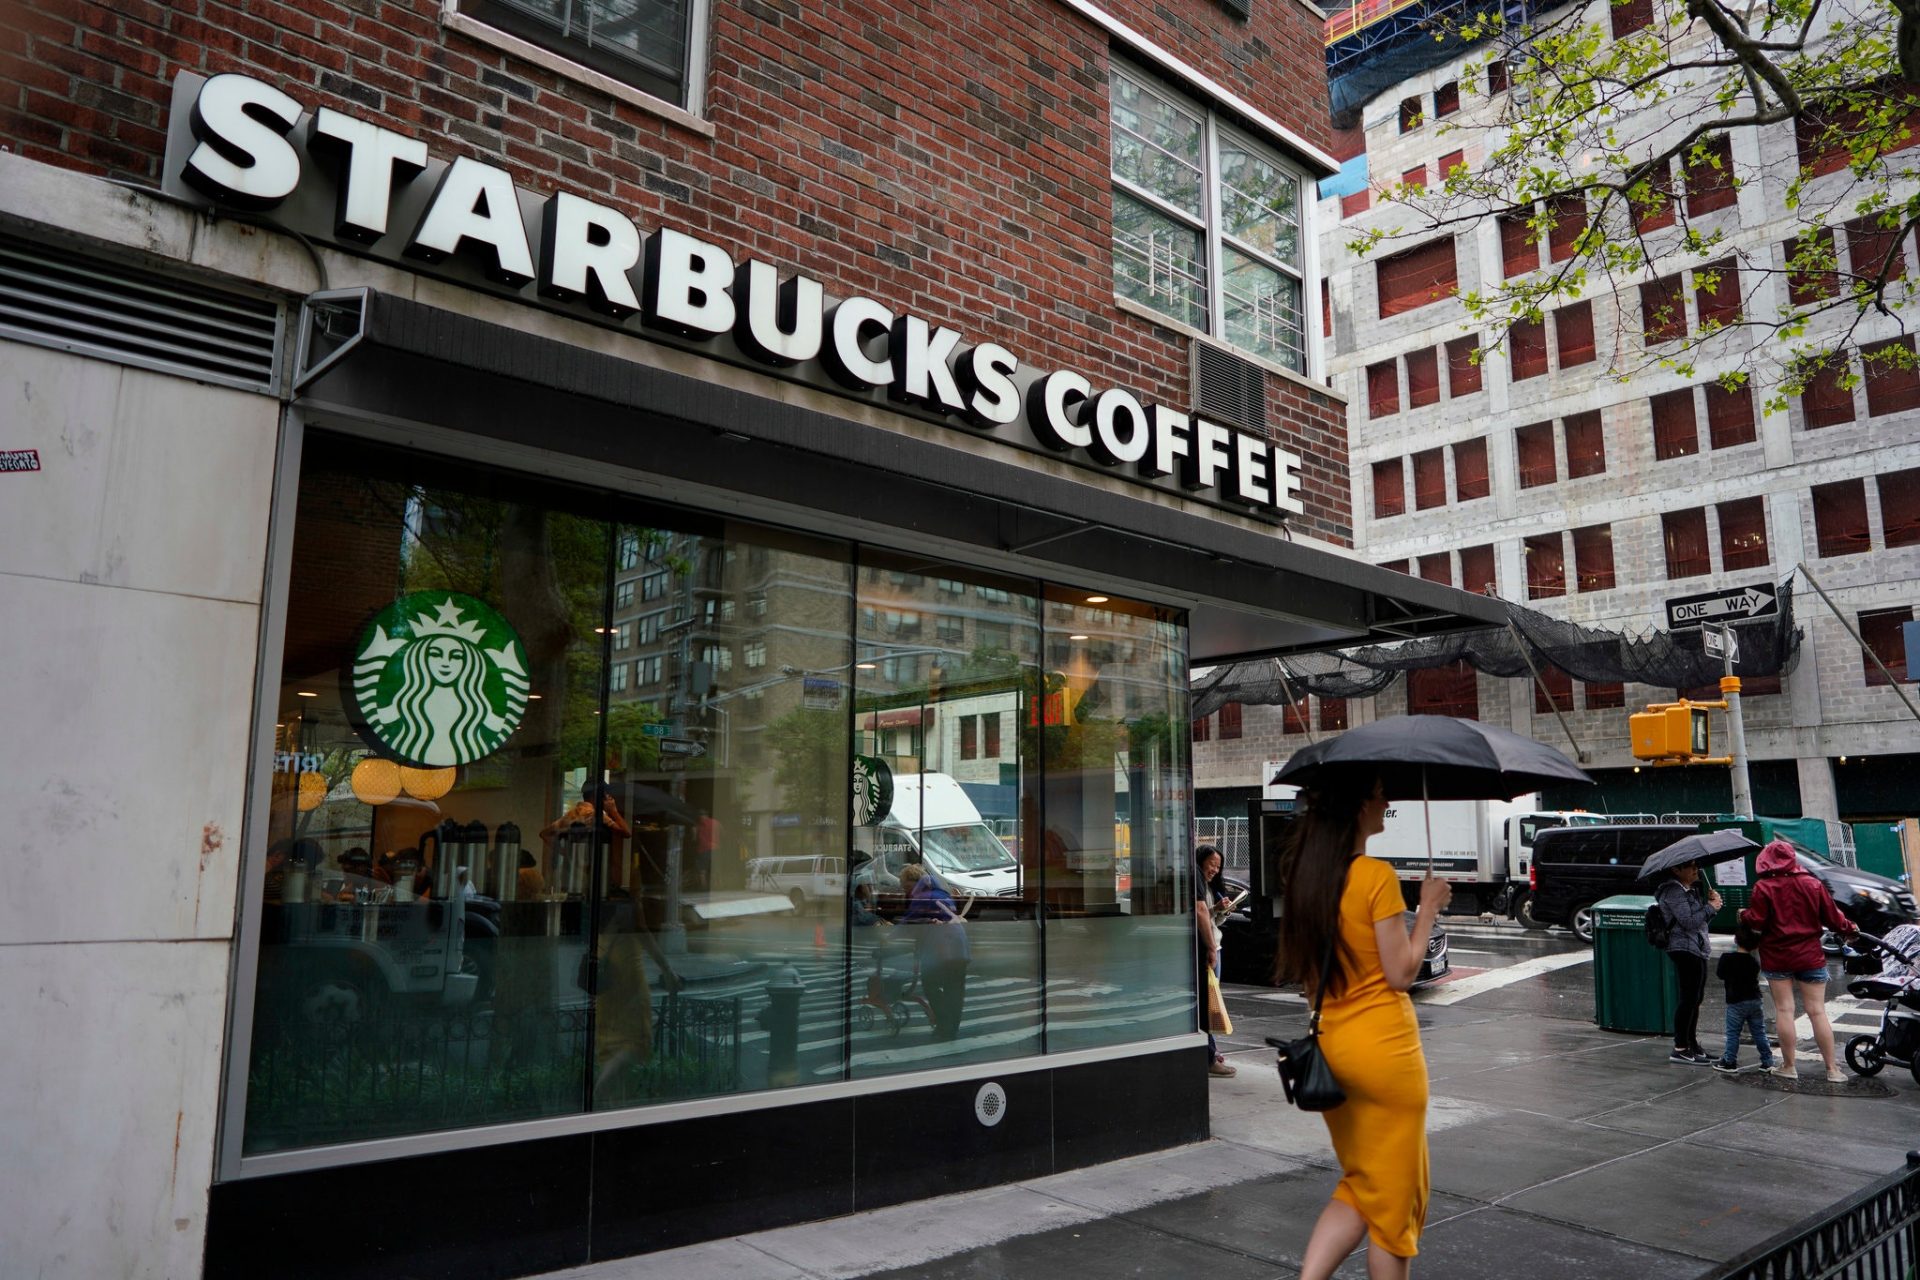 Starbucks จะเลิกวางจำหน่ายหนังสือพิมพ์ในเดือนกันยายนนี้ เหตุจากผู้บริโภคนิยมเสพสื่อออนไลน์เพิ่มมากขึ้น